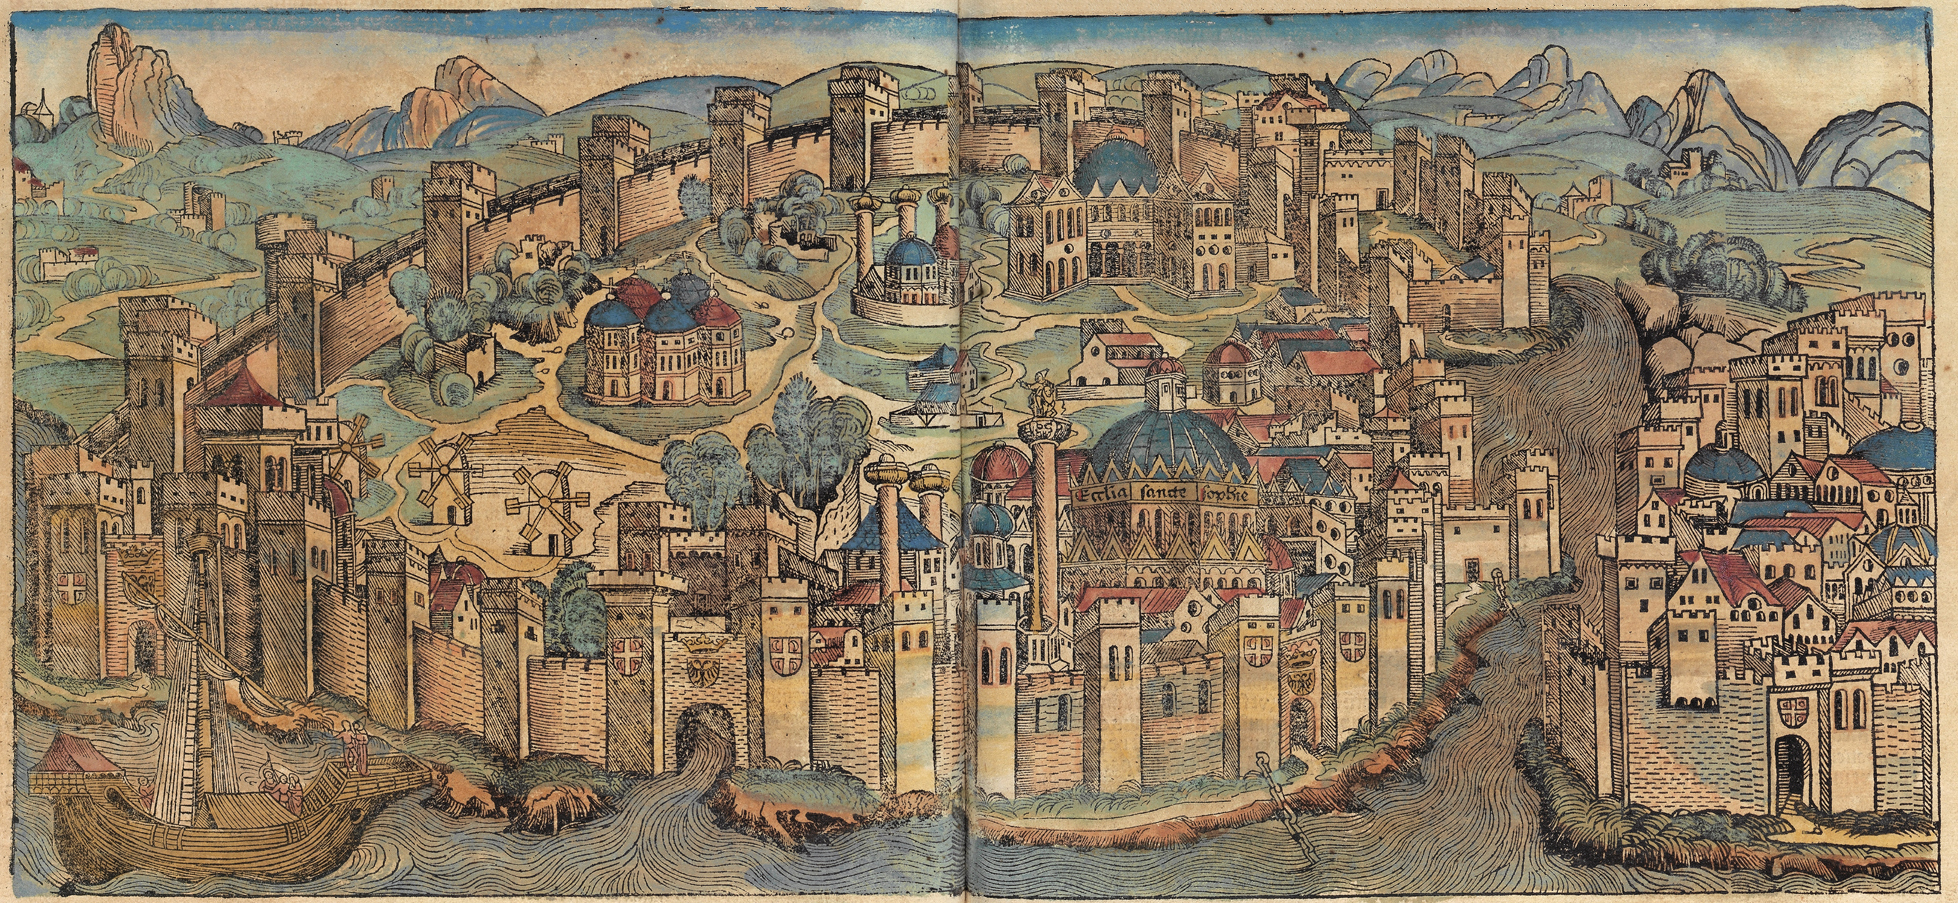 Византия – «Армянская держава». Роль армян в истории империи